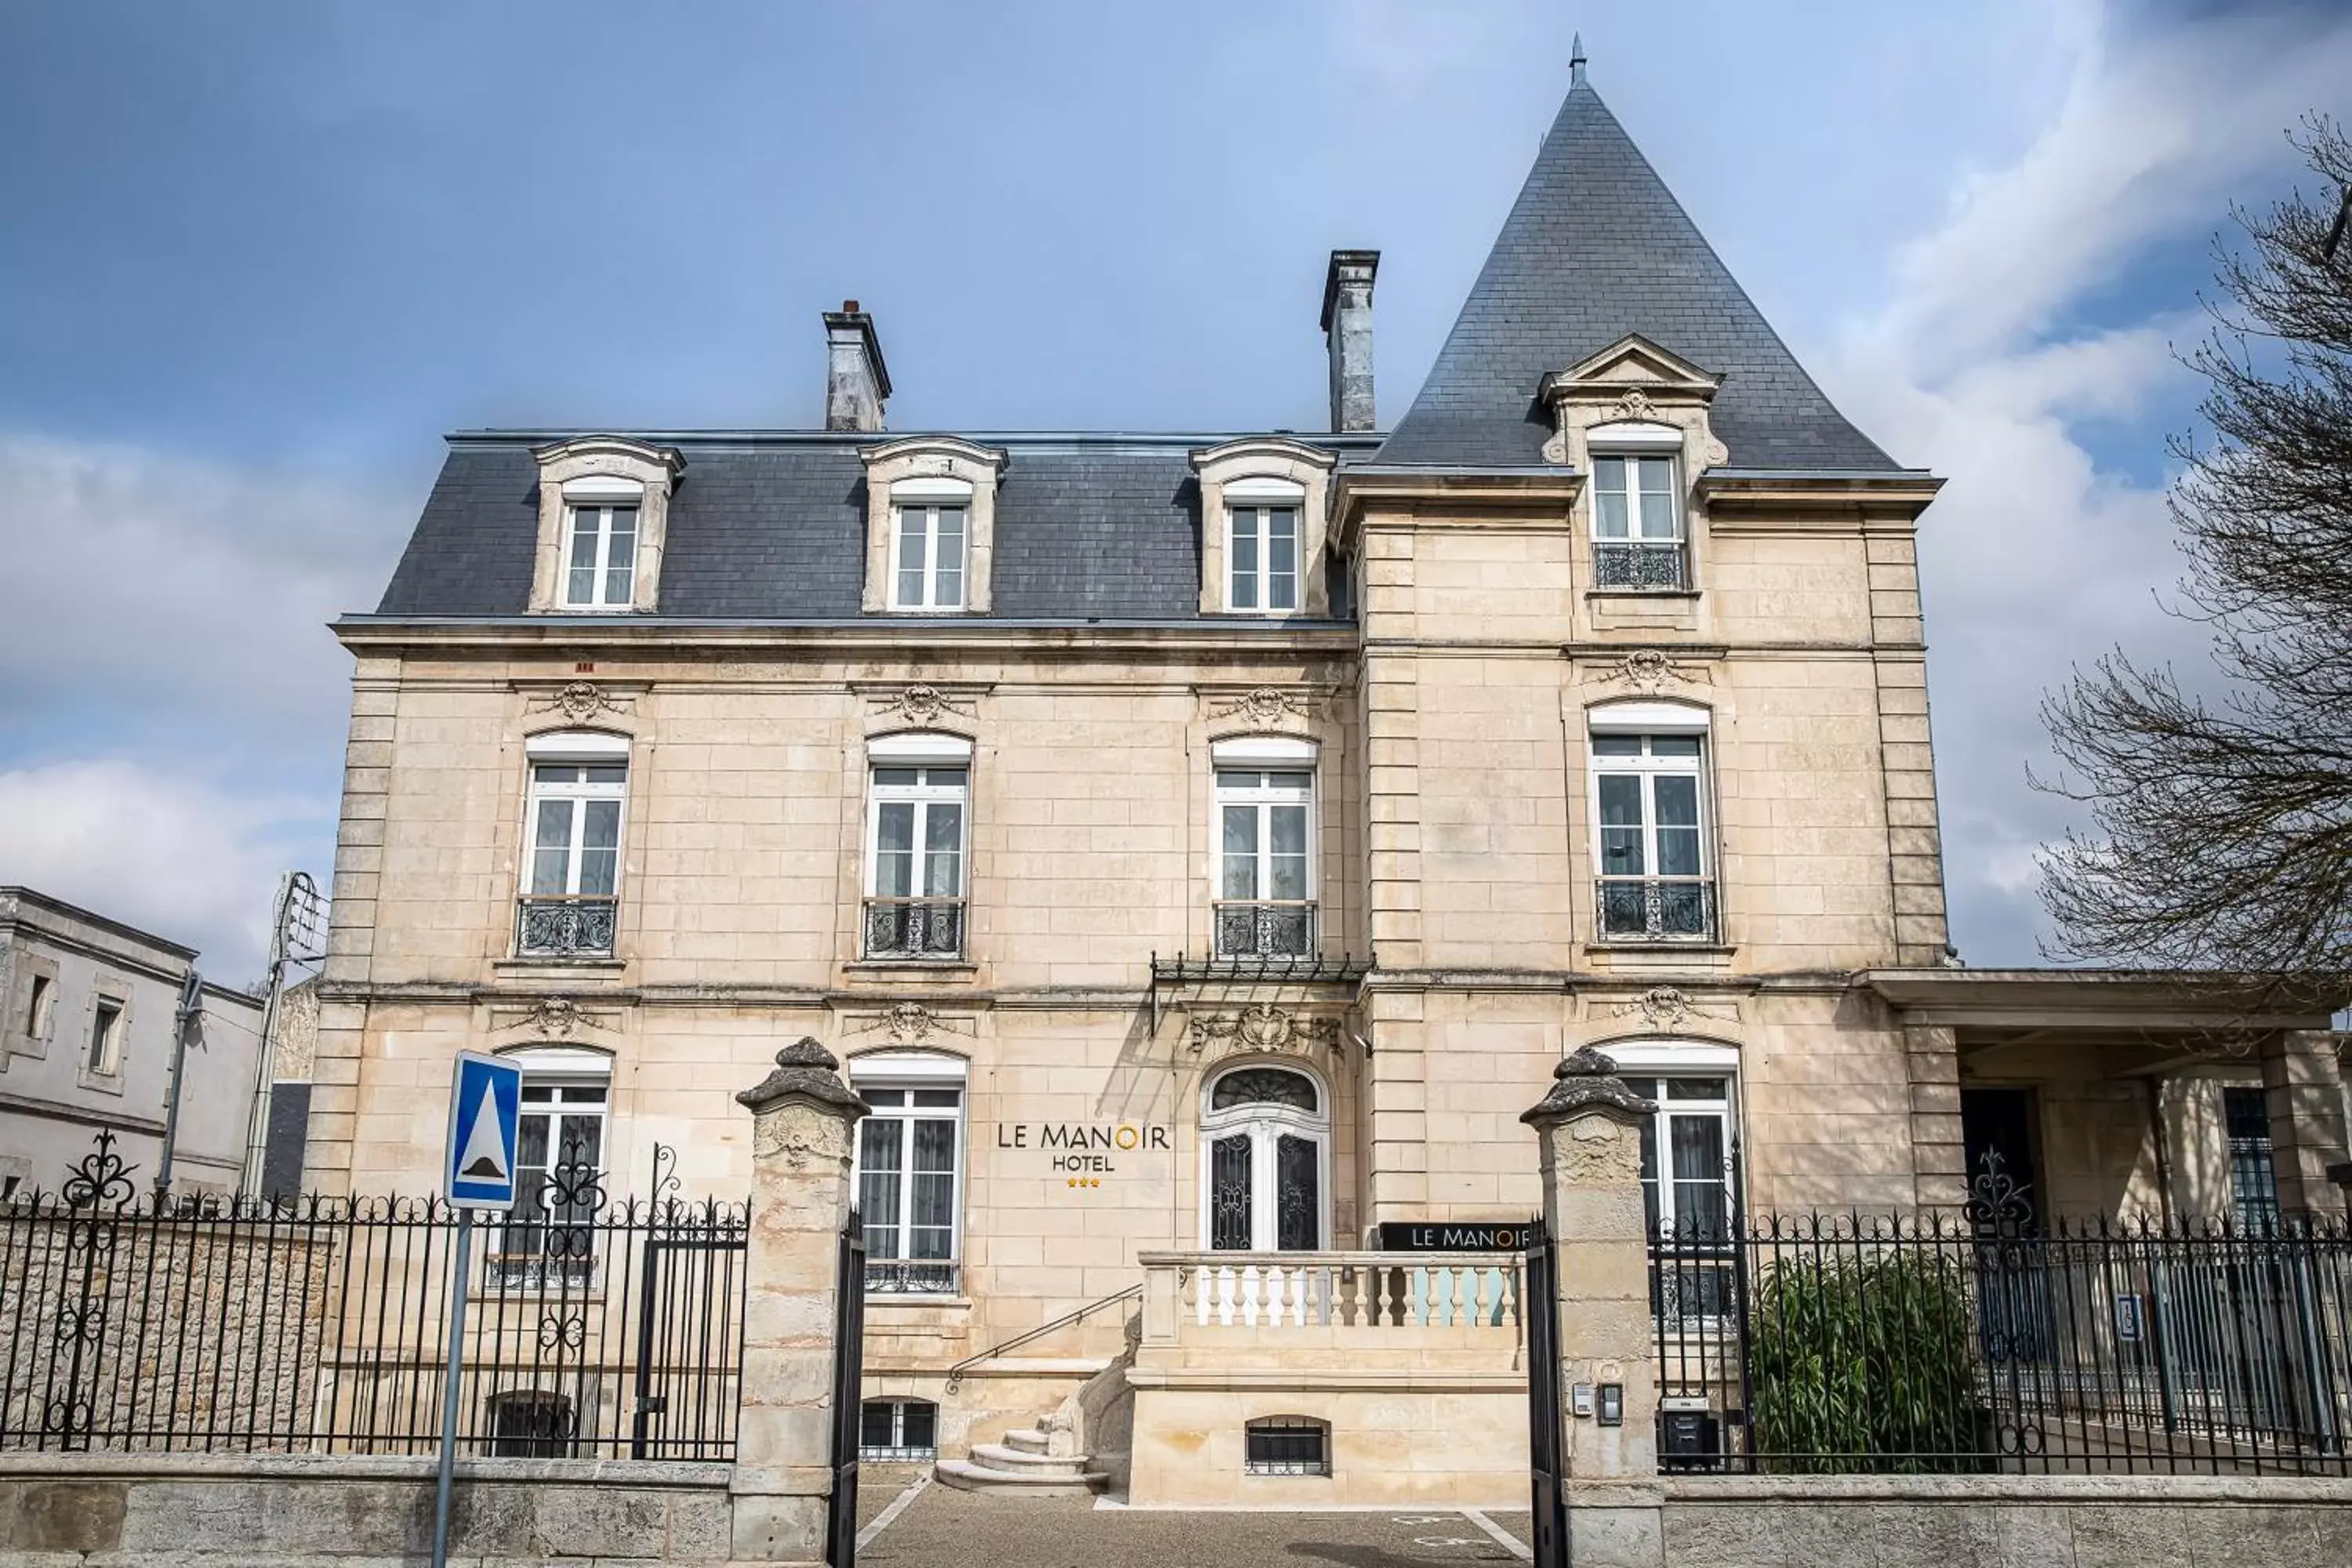 Property building in Le Manoir Hôtel